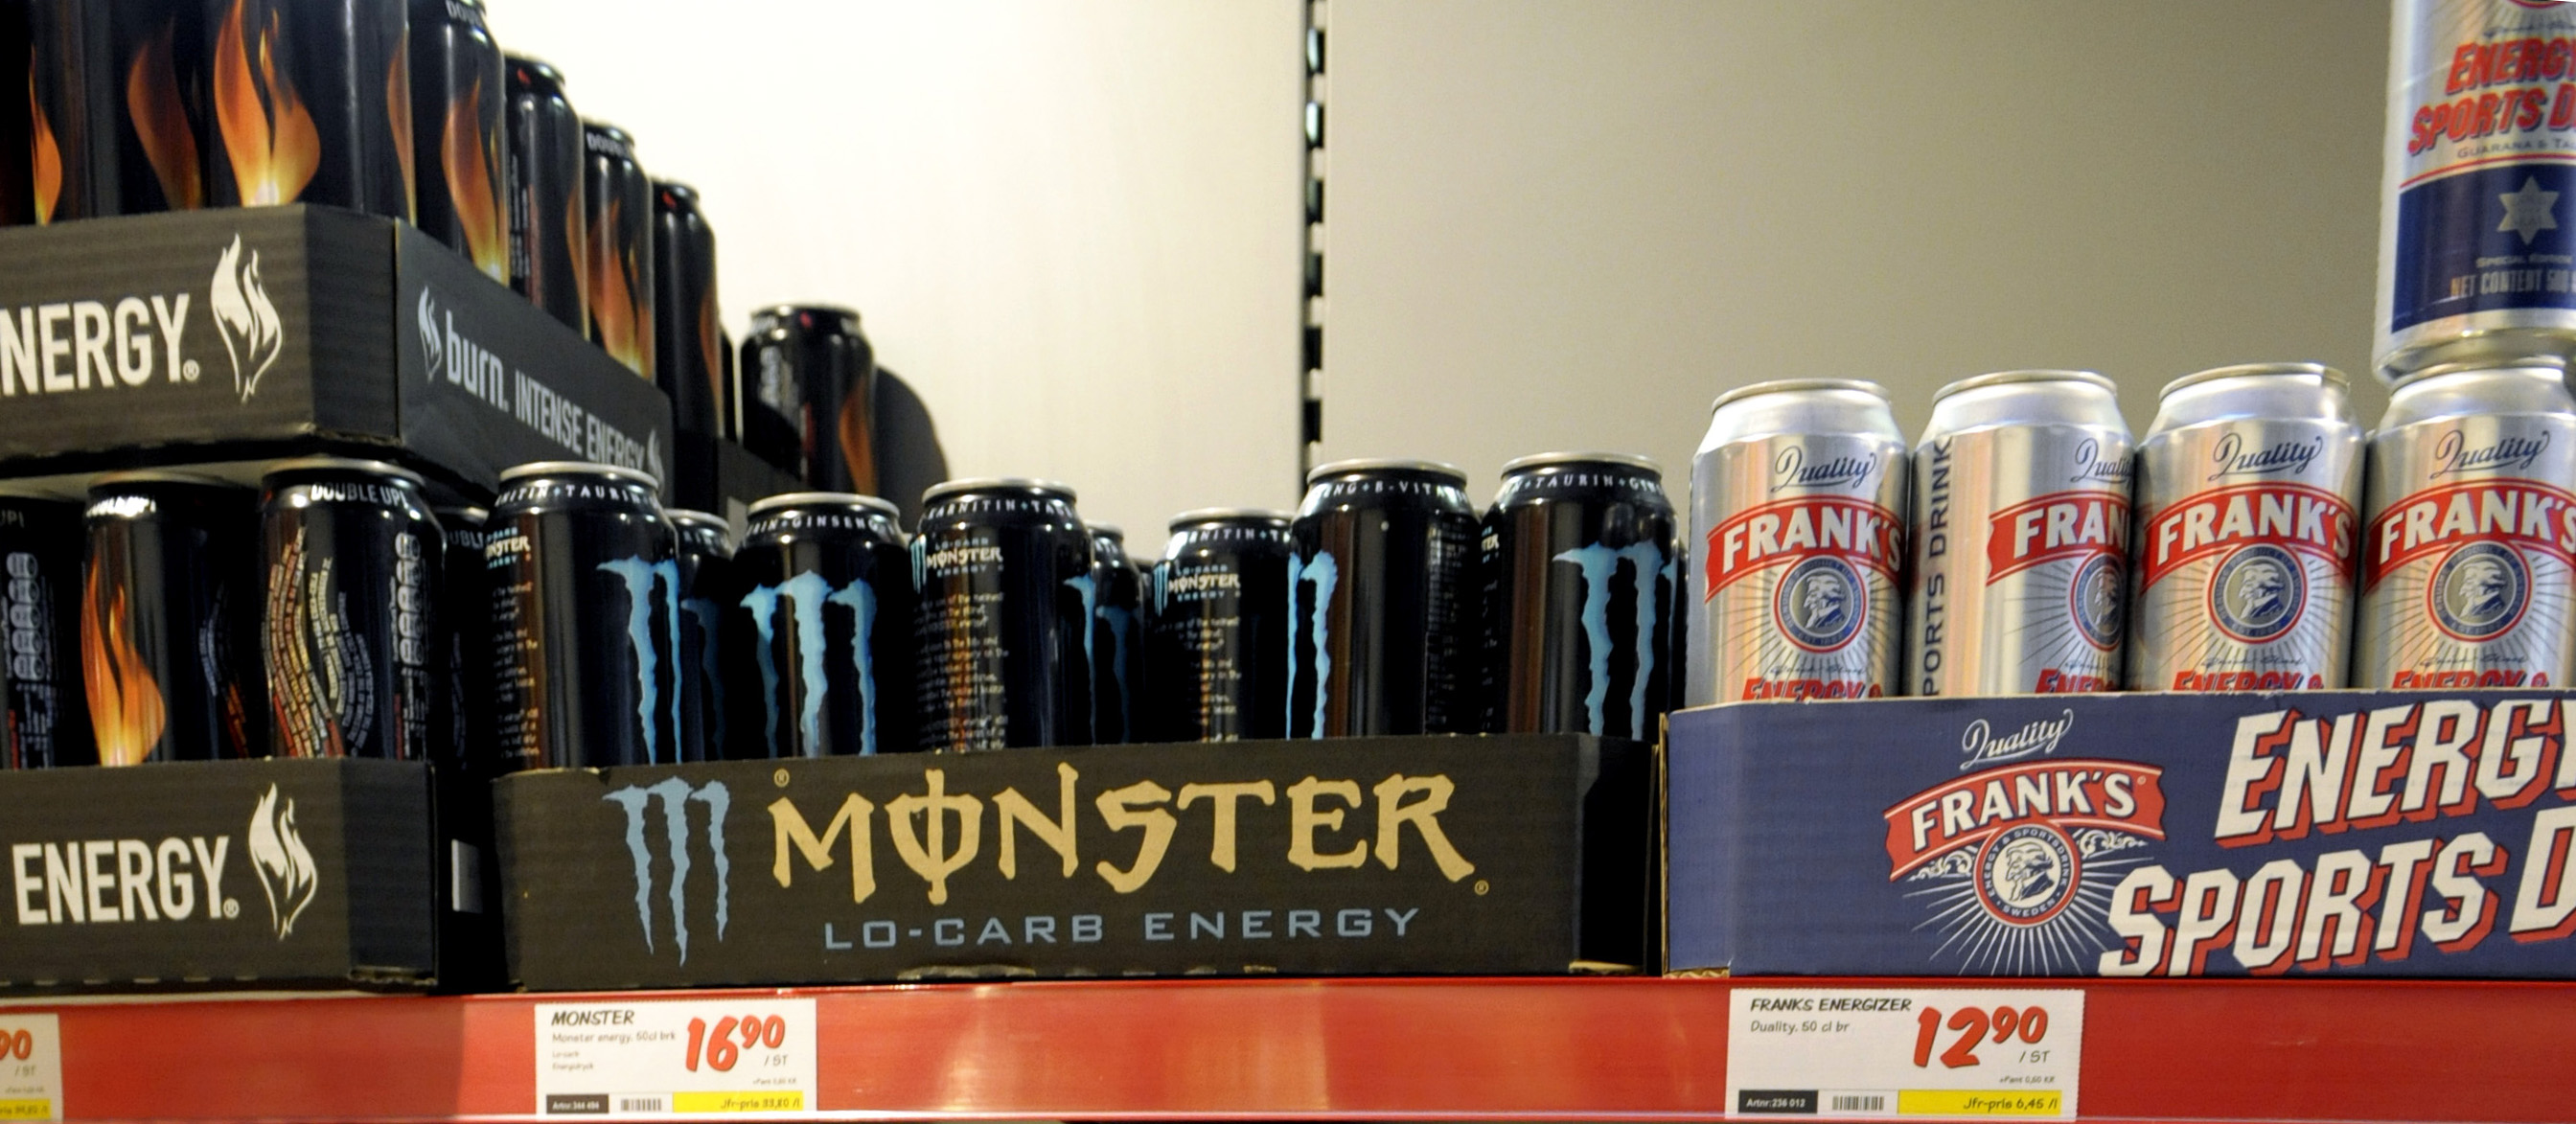 Drycken Monster har råkat innehålla arsenik.